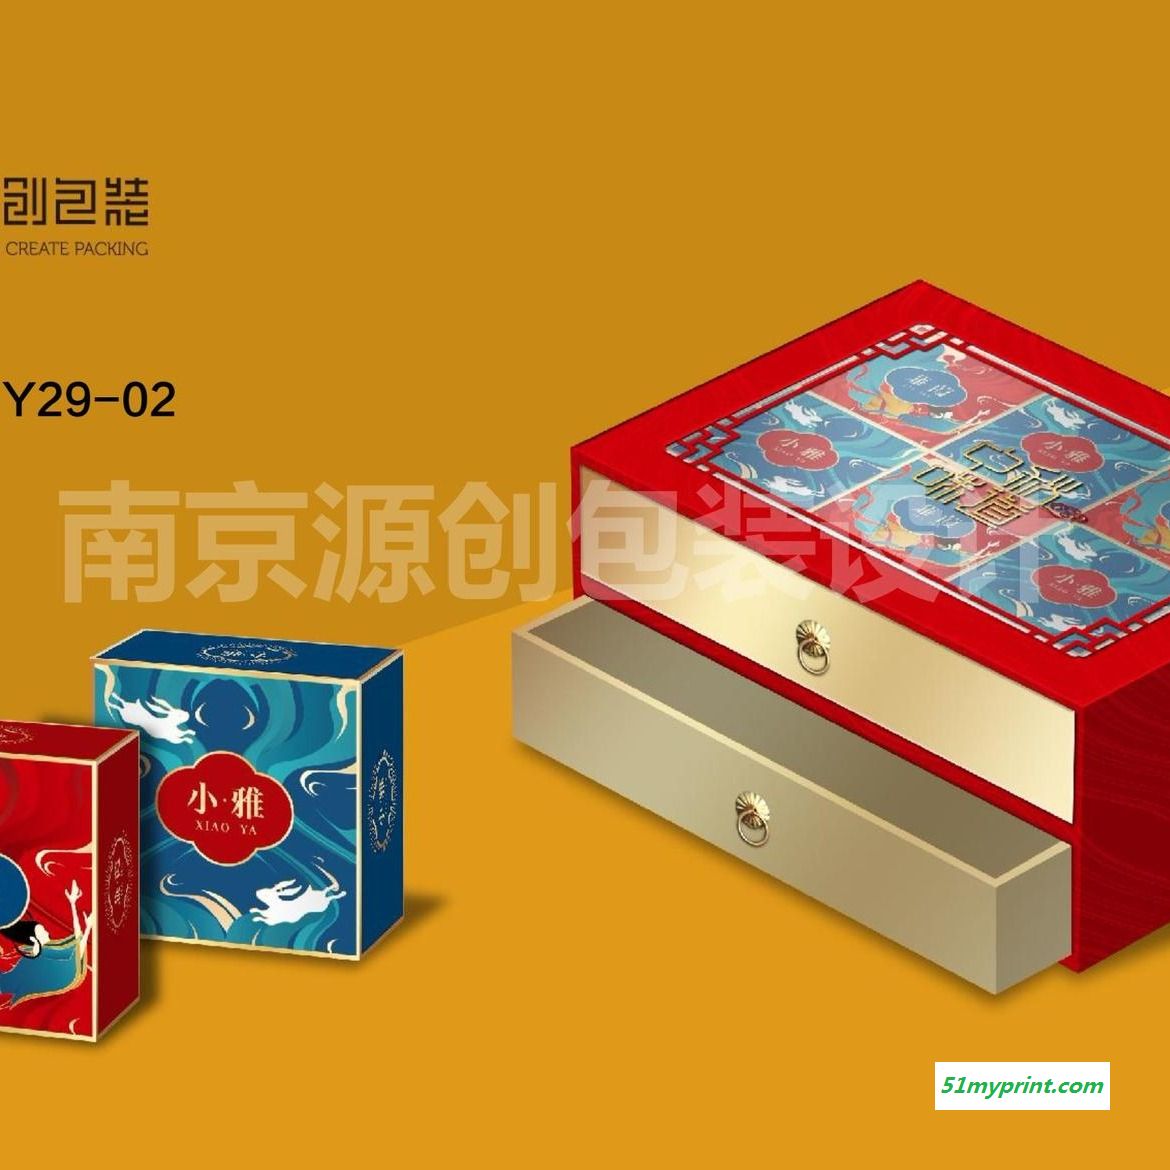 月饼包装盒 设计制作月饼盒 礼品盒生产制作 源创包装 免费设计打样